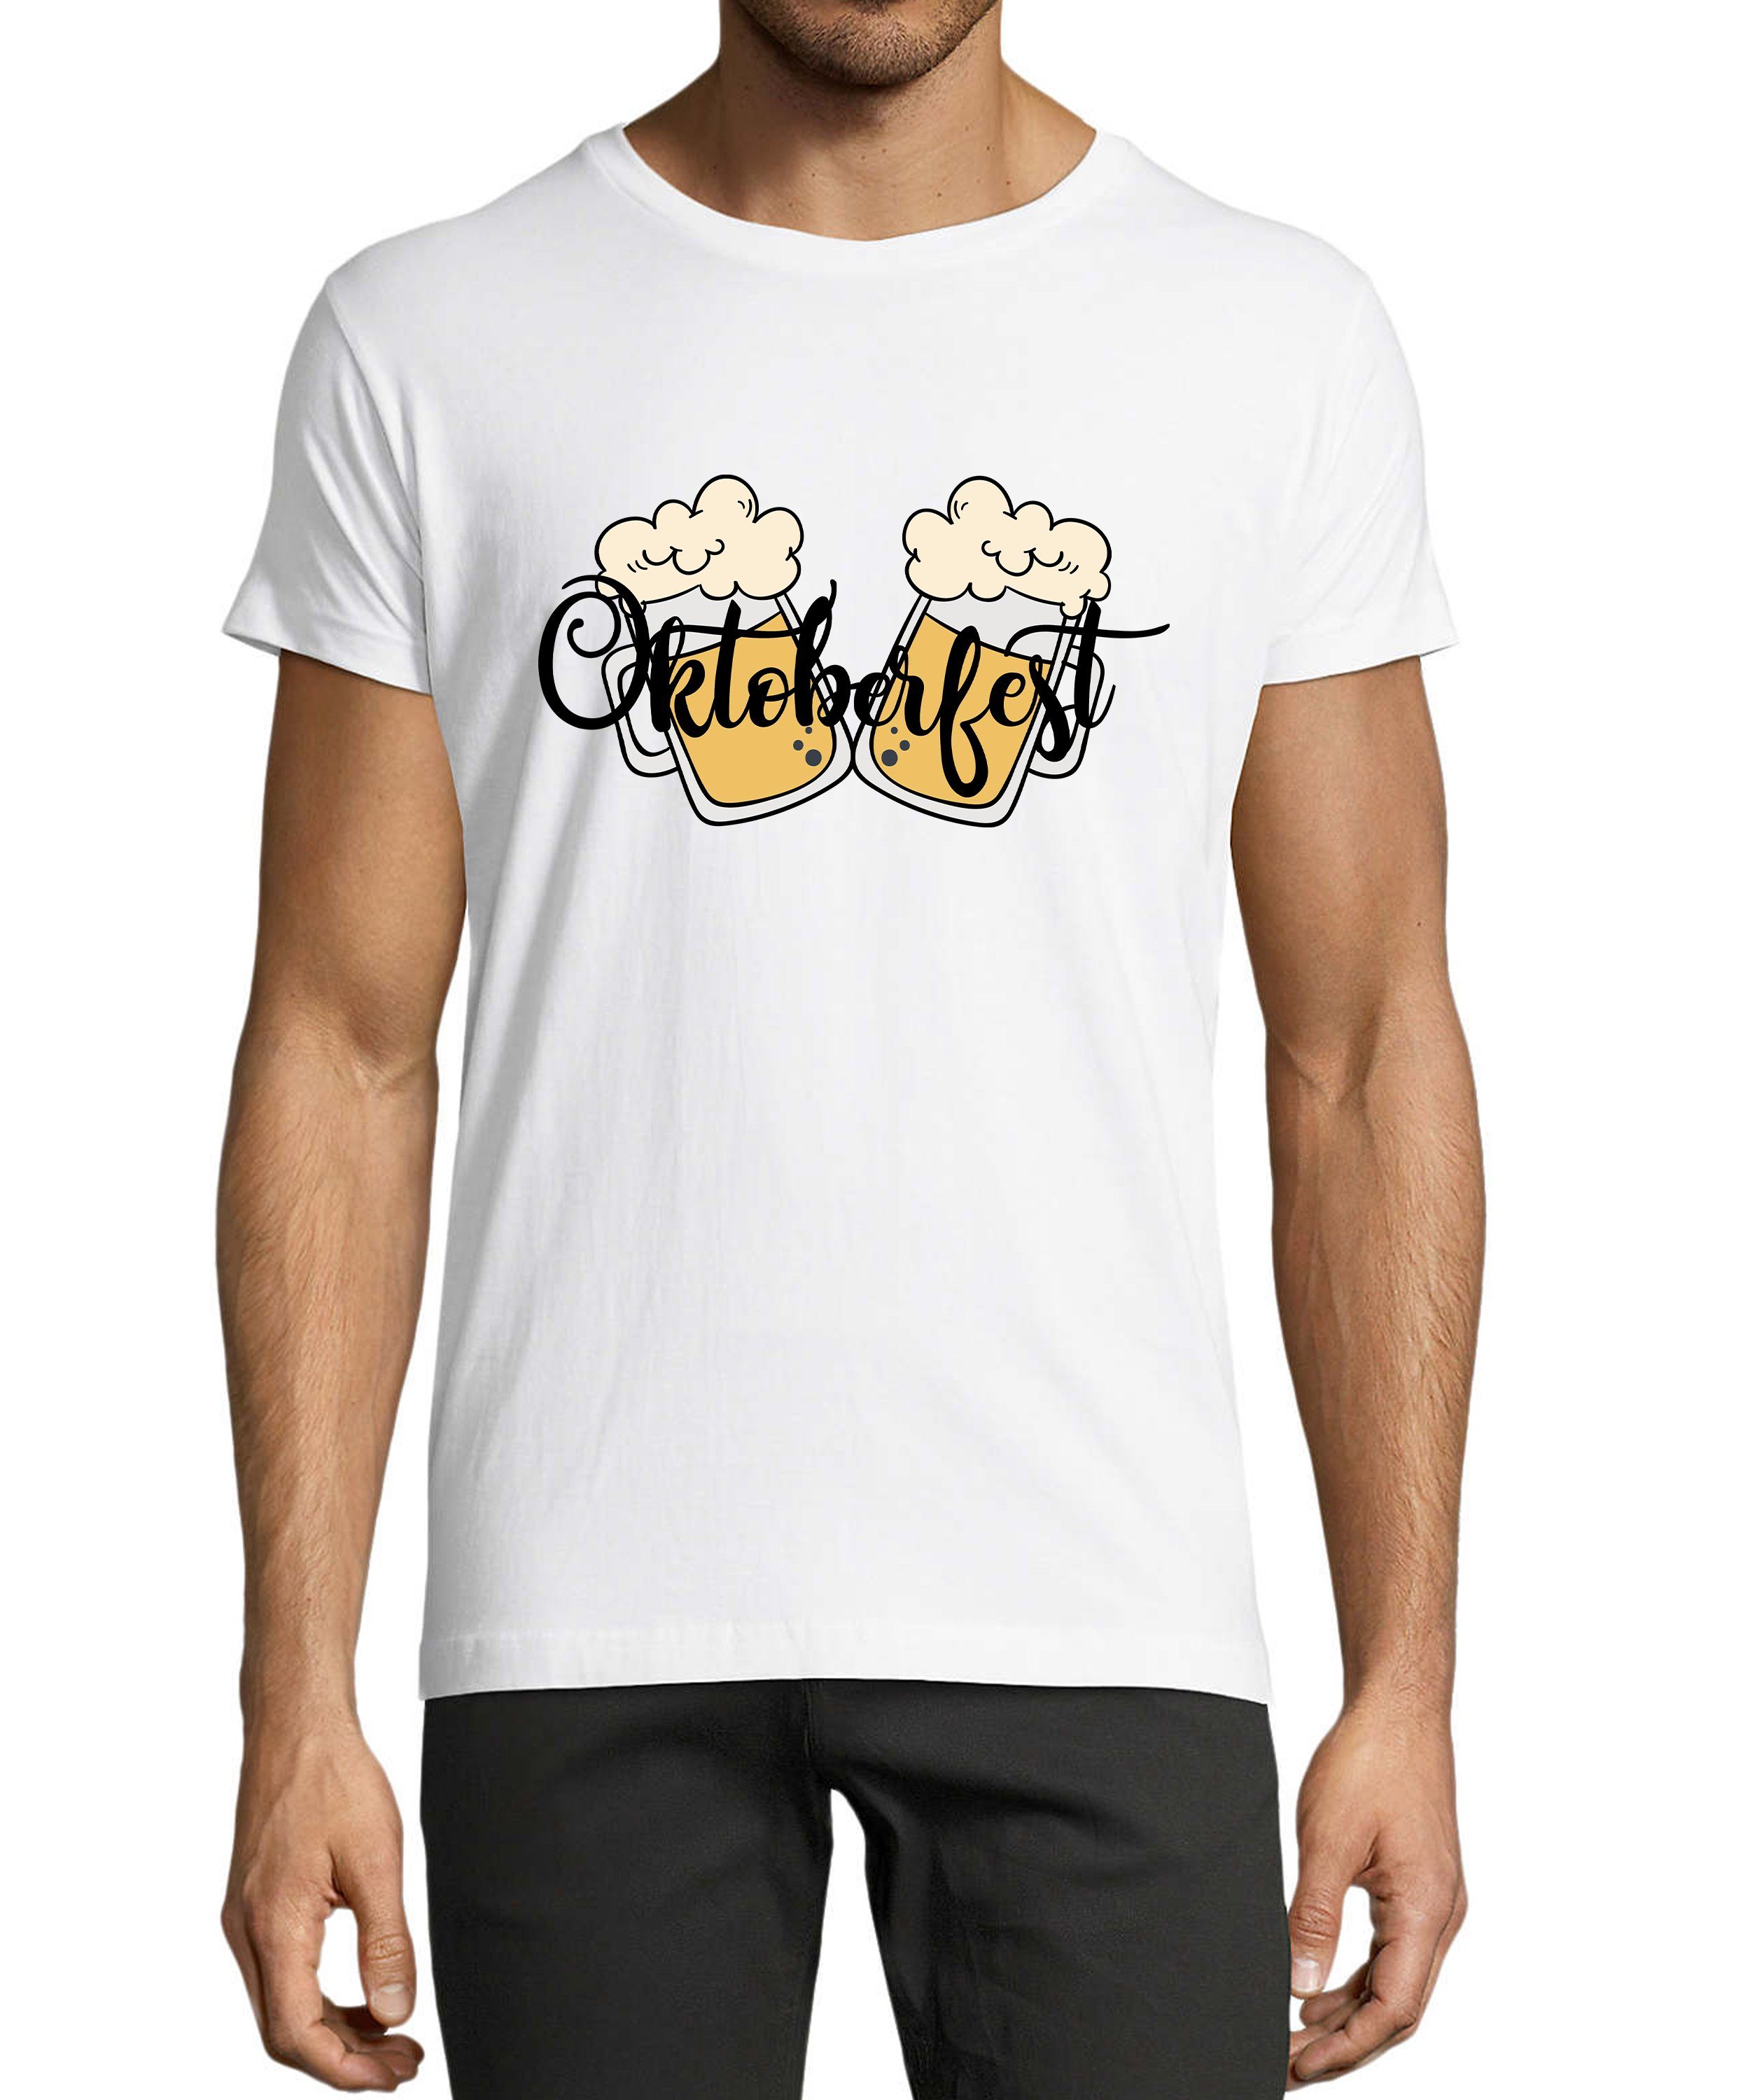 Party Regular Oktoberfest Shirt 2 Fit, Trinkshirt Baumwollshirt T-Shirt Herren MyDesign24 - Aufdruck weiss T-Shirt mit i326 Biergläser